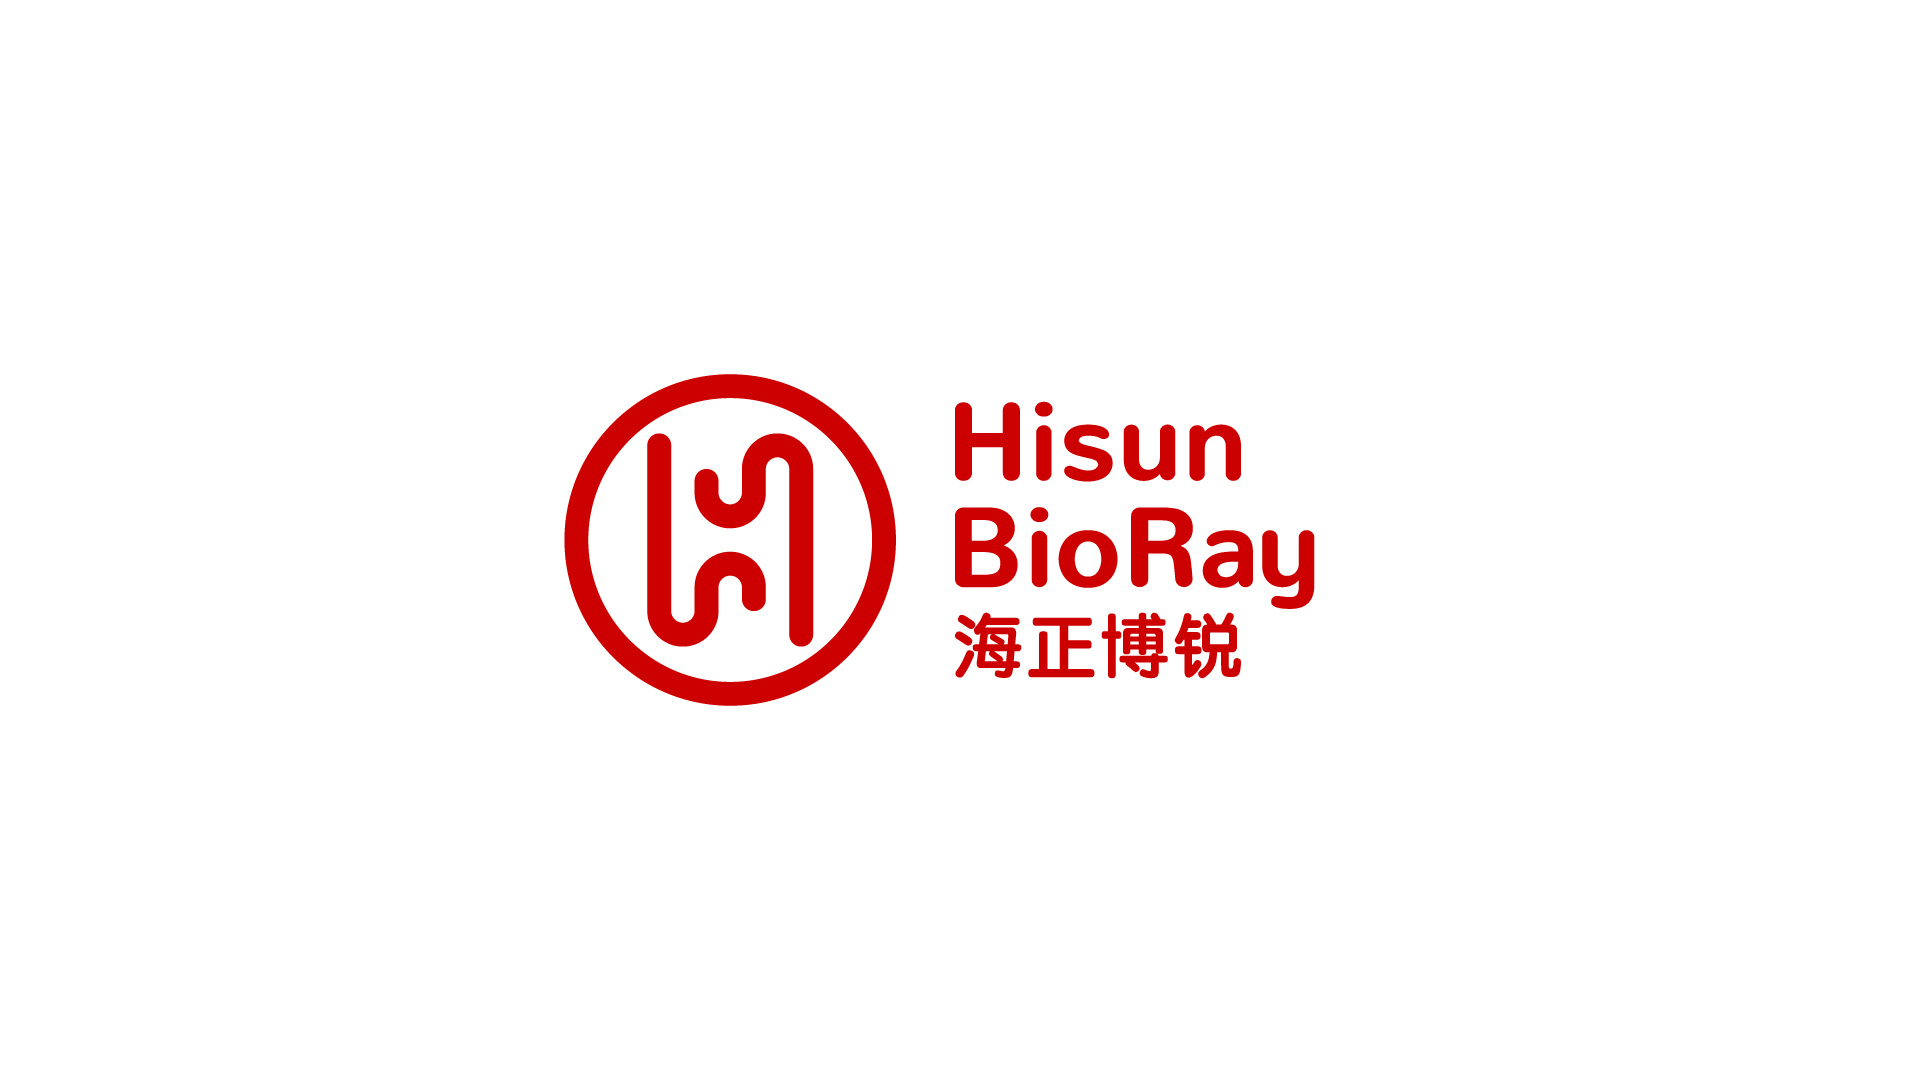 Hisun BioRay